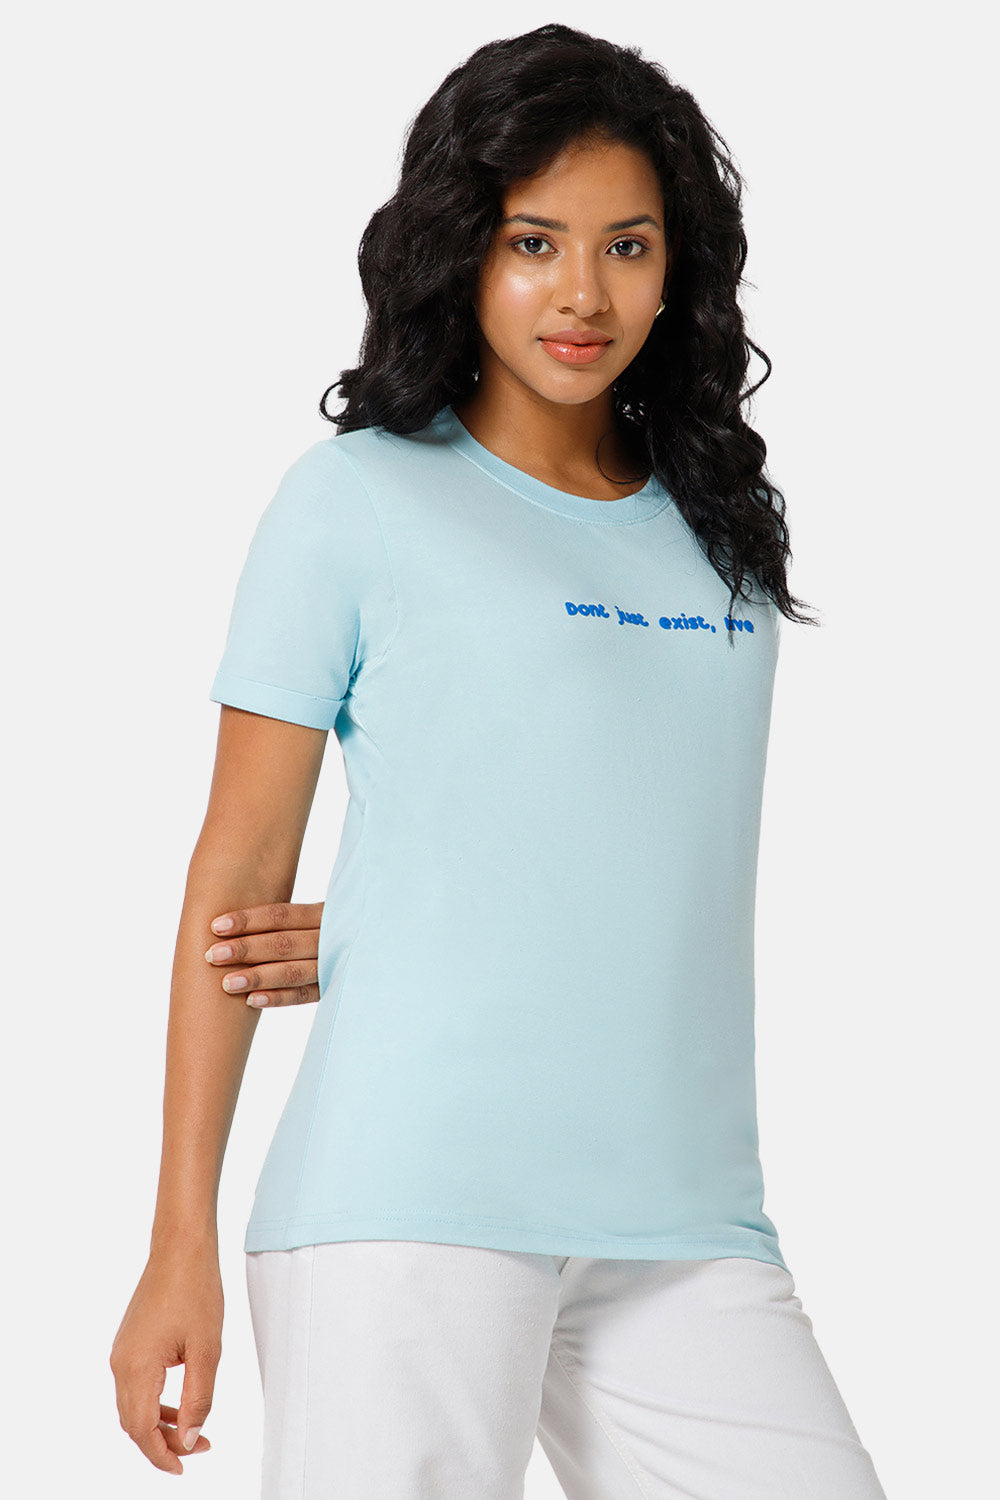 Jusperf Women Half Sleeve Crew Neck T-shirt  - Blue - SD15